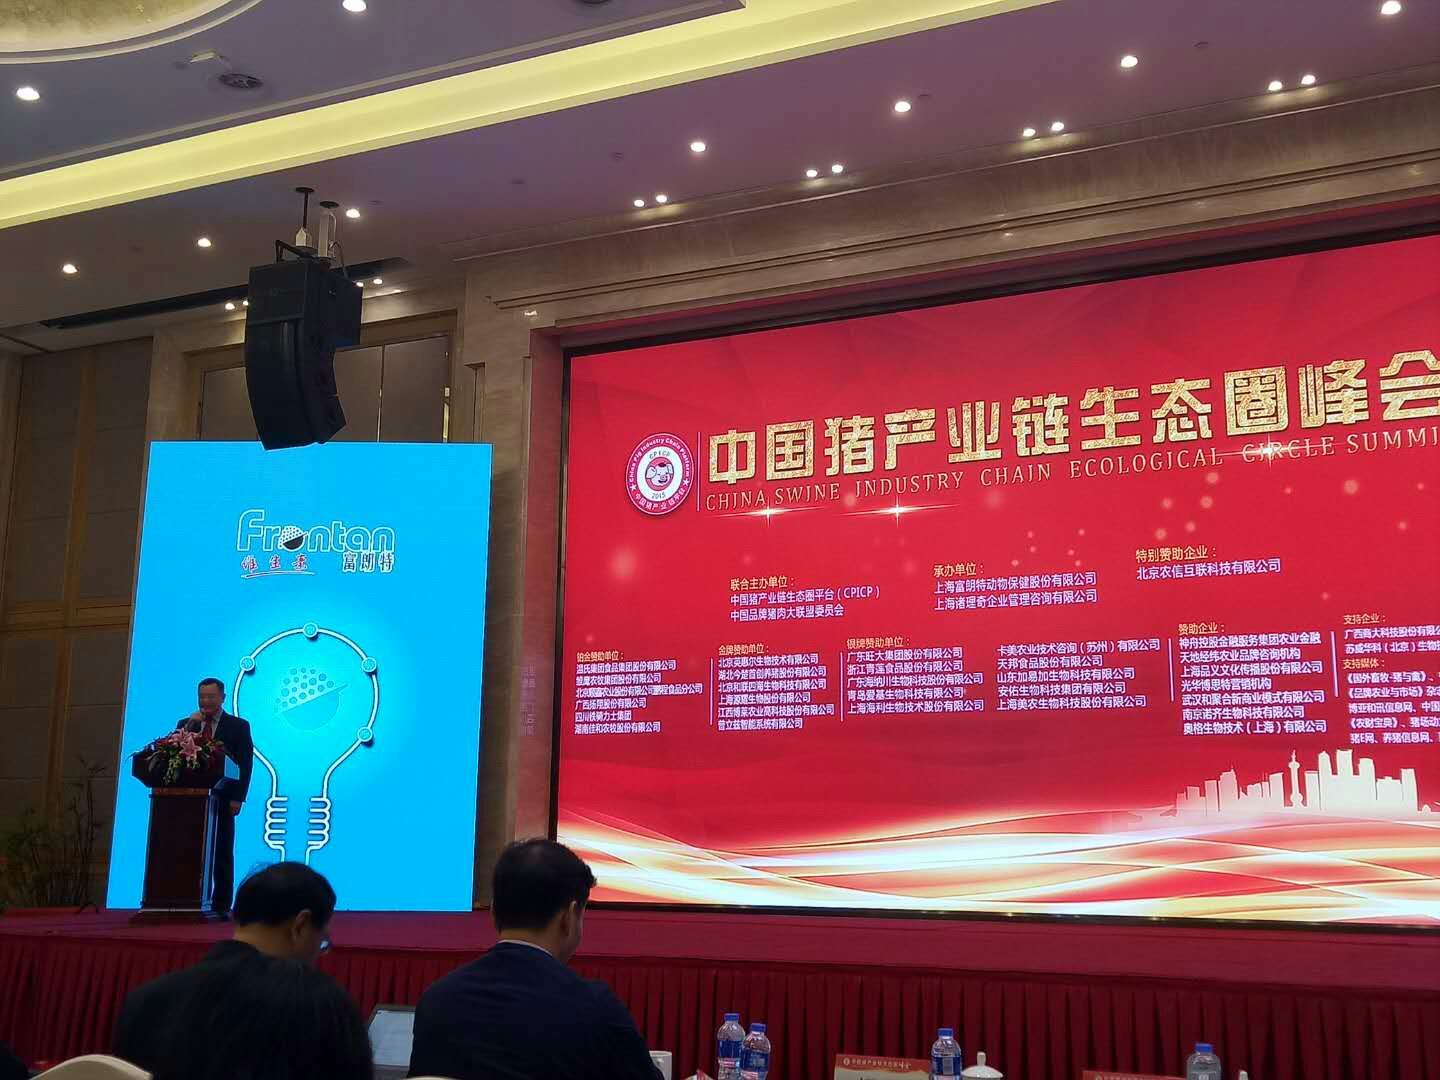 万博全站ManBetX官网金博士受邀主持“中国猪产业链生态圈峰会”